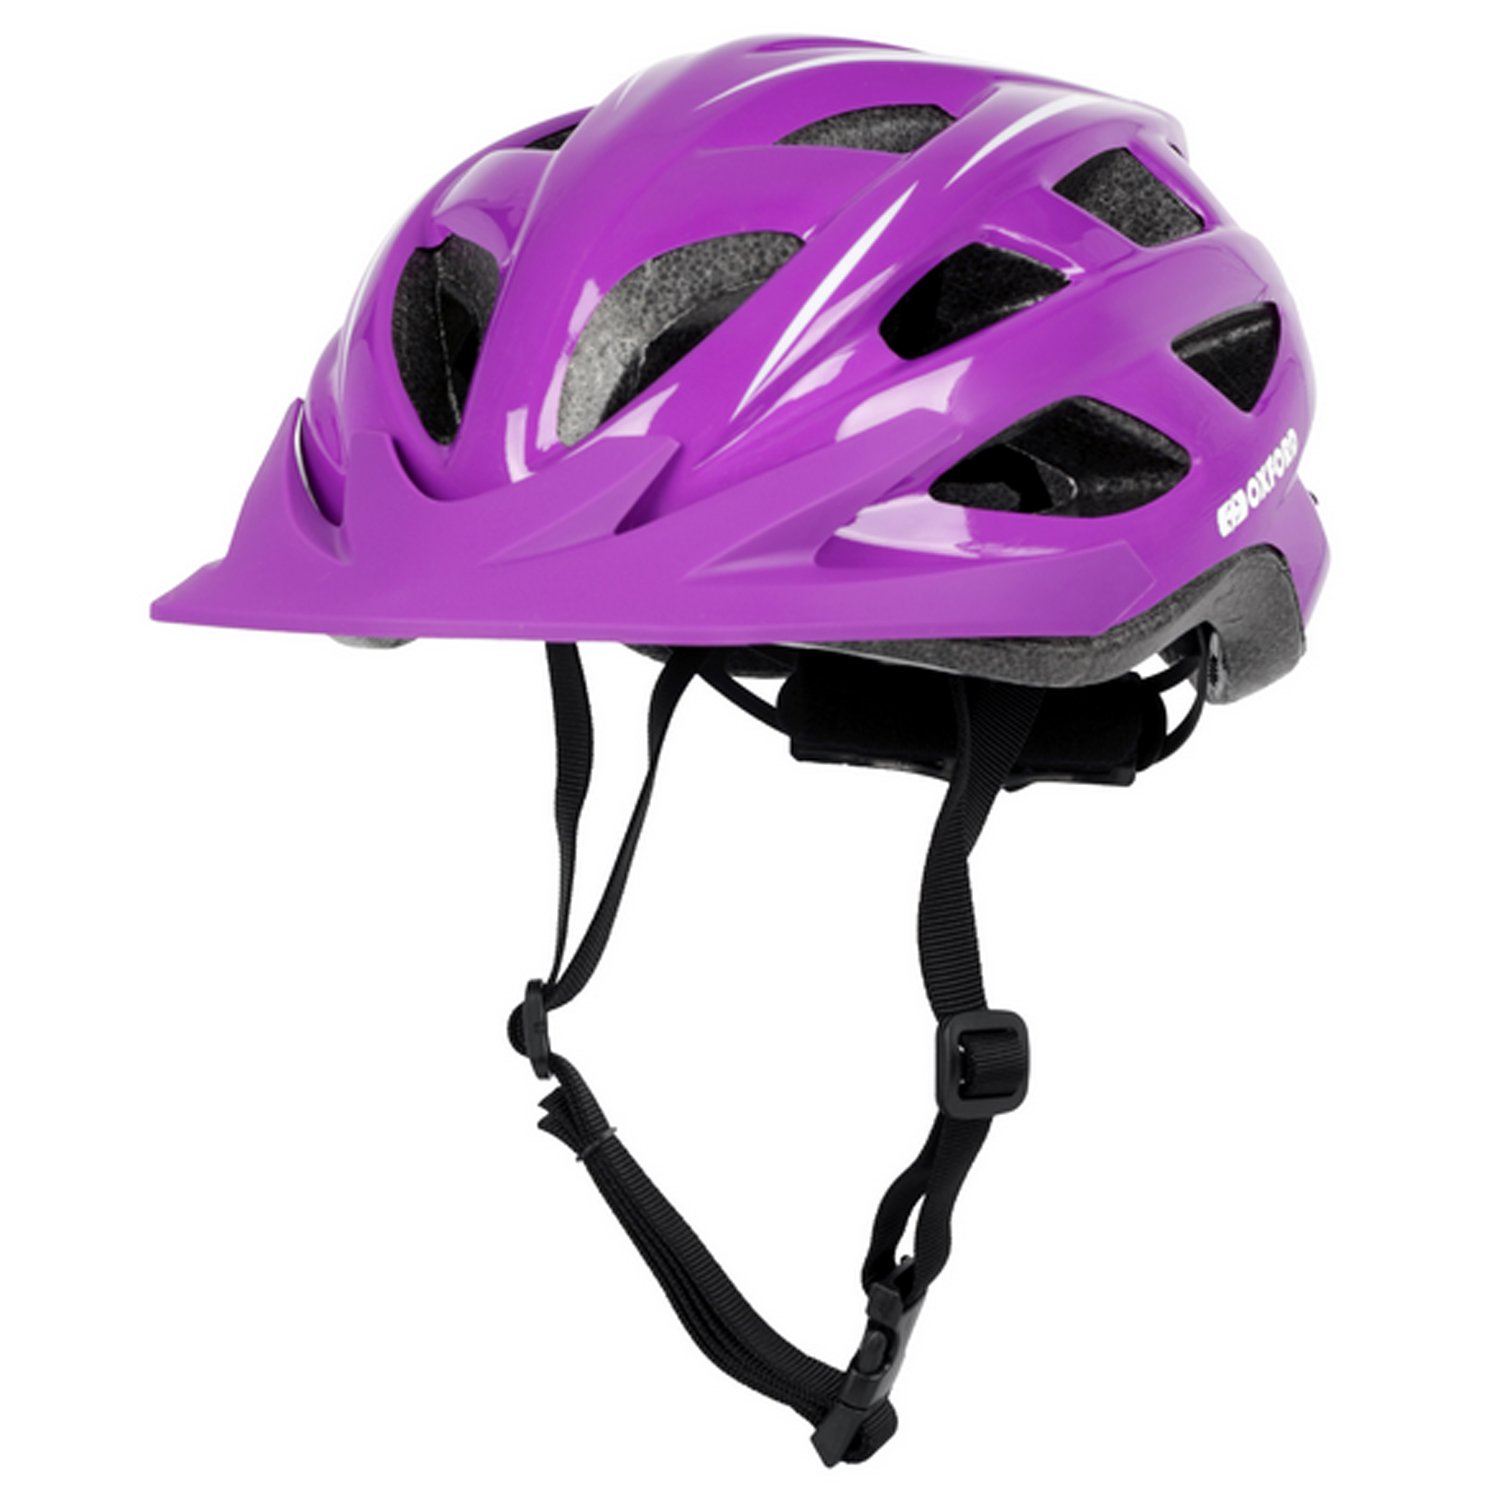 Велошлем Oxford Talon Helmet Purple, унисекс, фиолетовый, 2023, T1812 женский велосипед stels miss 7700 md v010 год 2023 фиолетовый ростовка 19